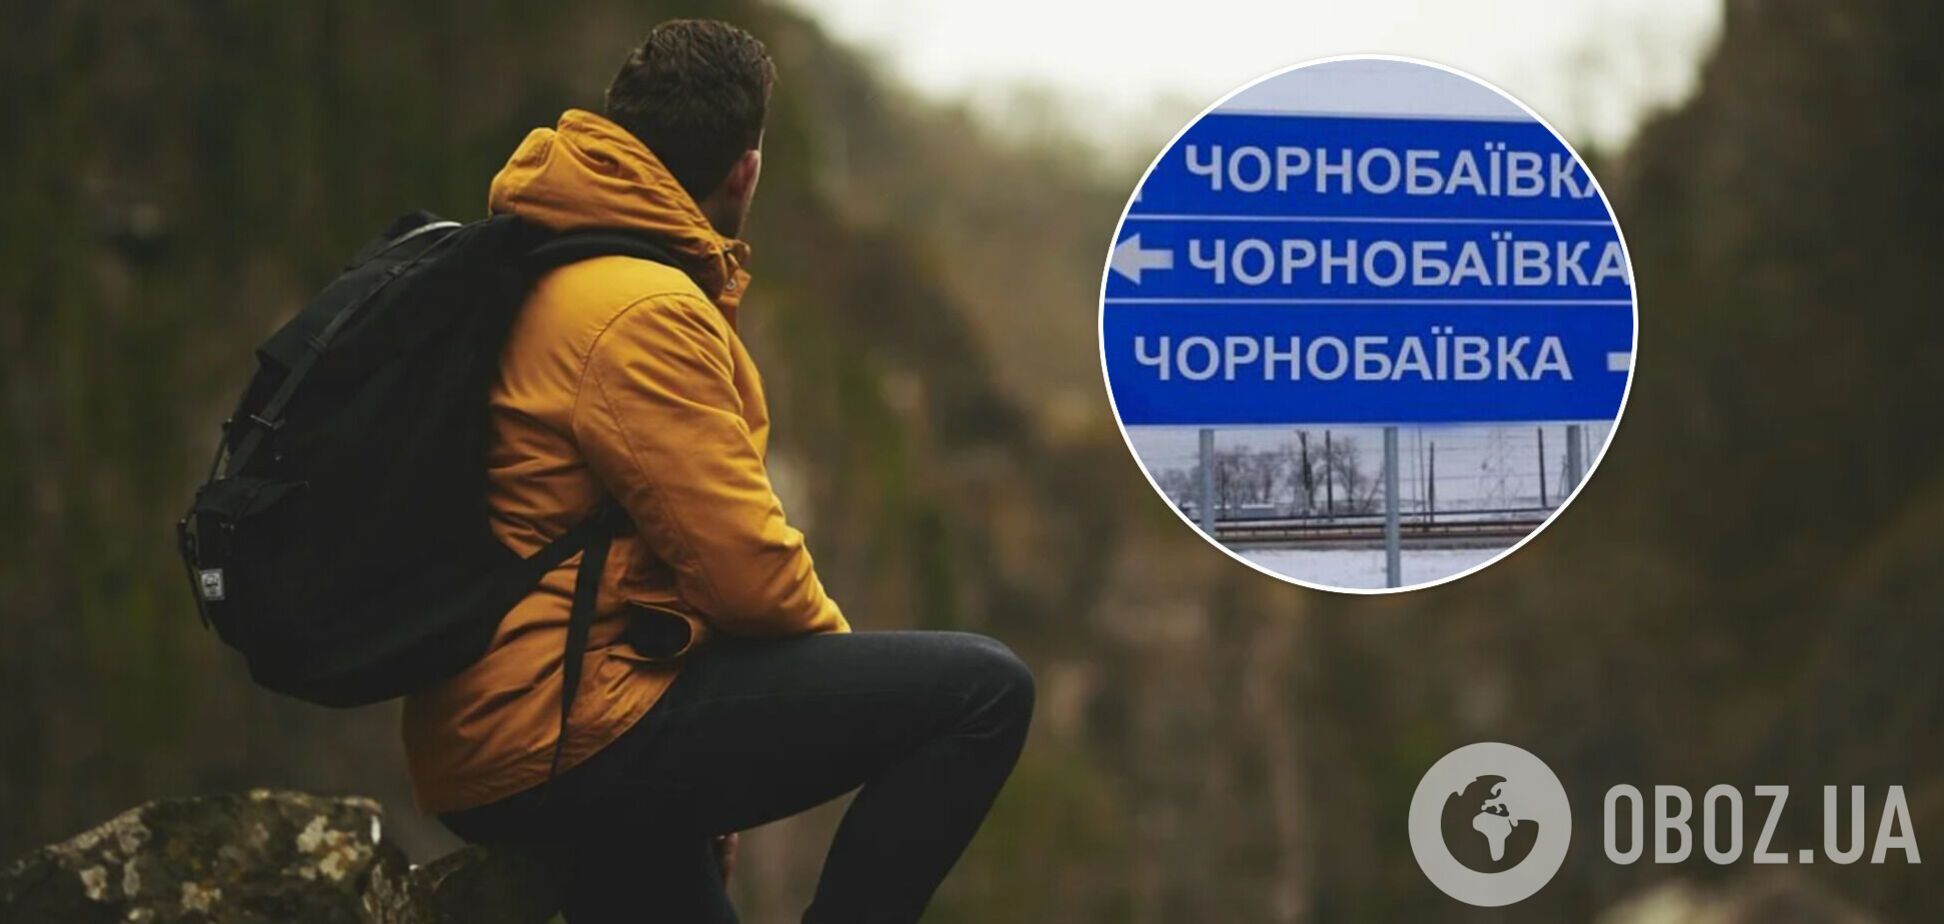 Усього три напрямки. У мережі підказали, куди поїхати російському туристу на відпочинок у 2022 році